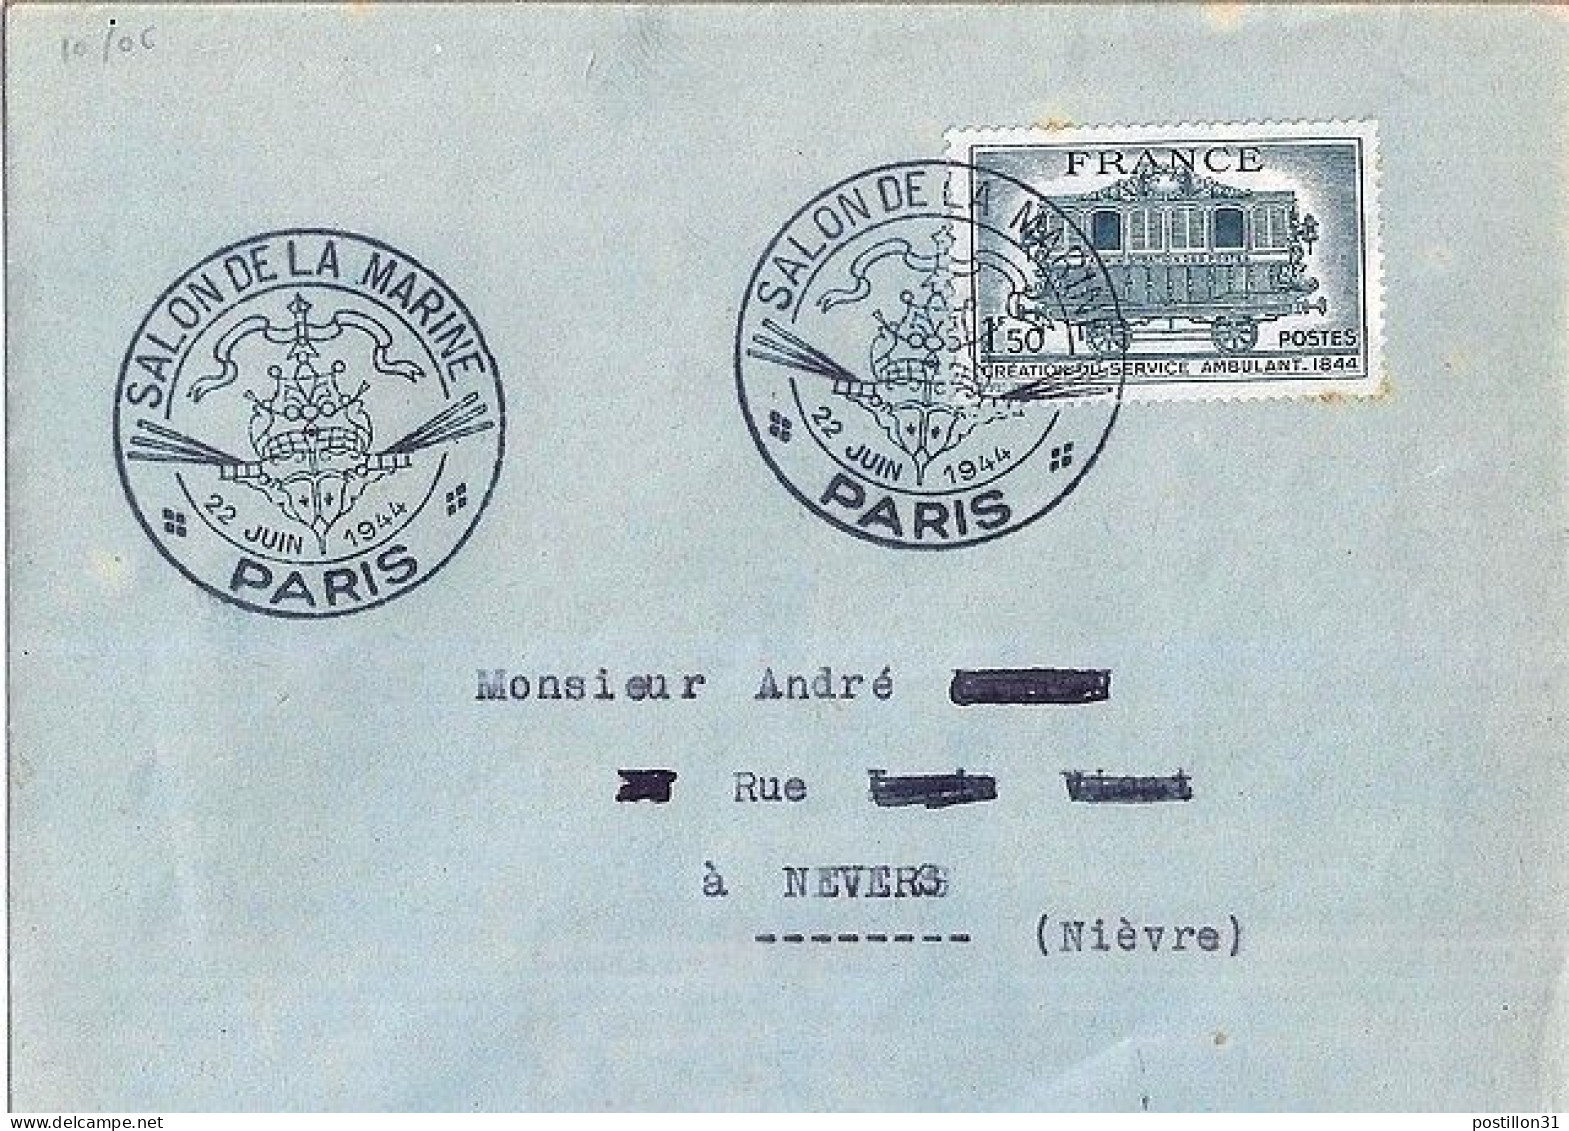 FRANCE N° 609 S/L. DE PARIS/SALON DE LA MARINE/22.6.44 - Lettres & Documents